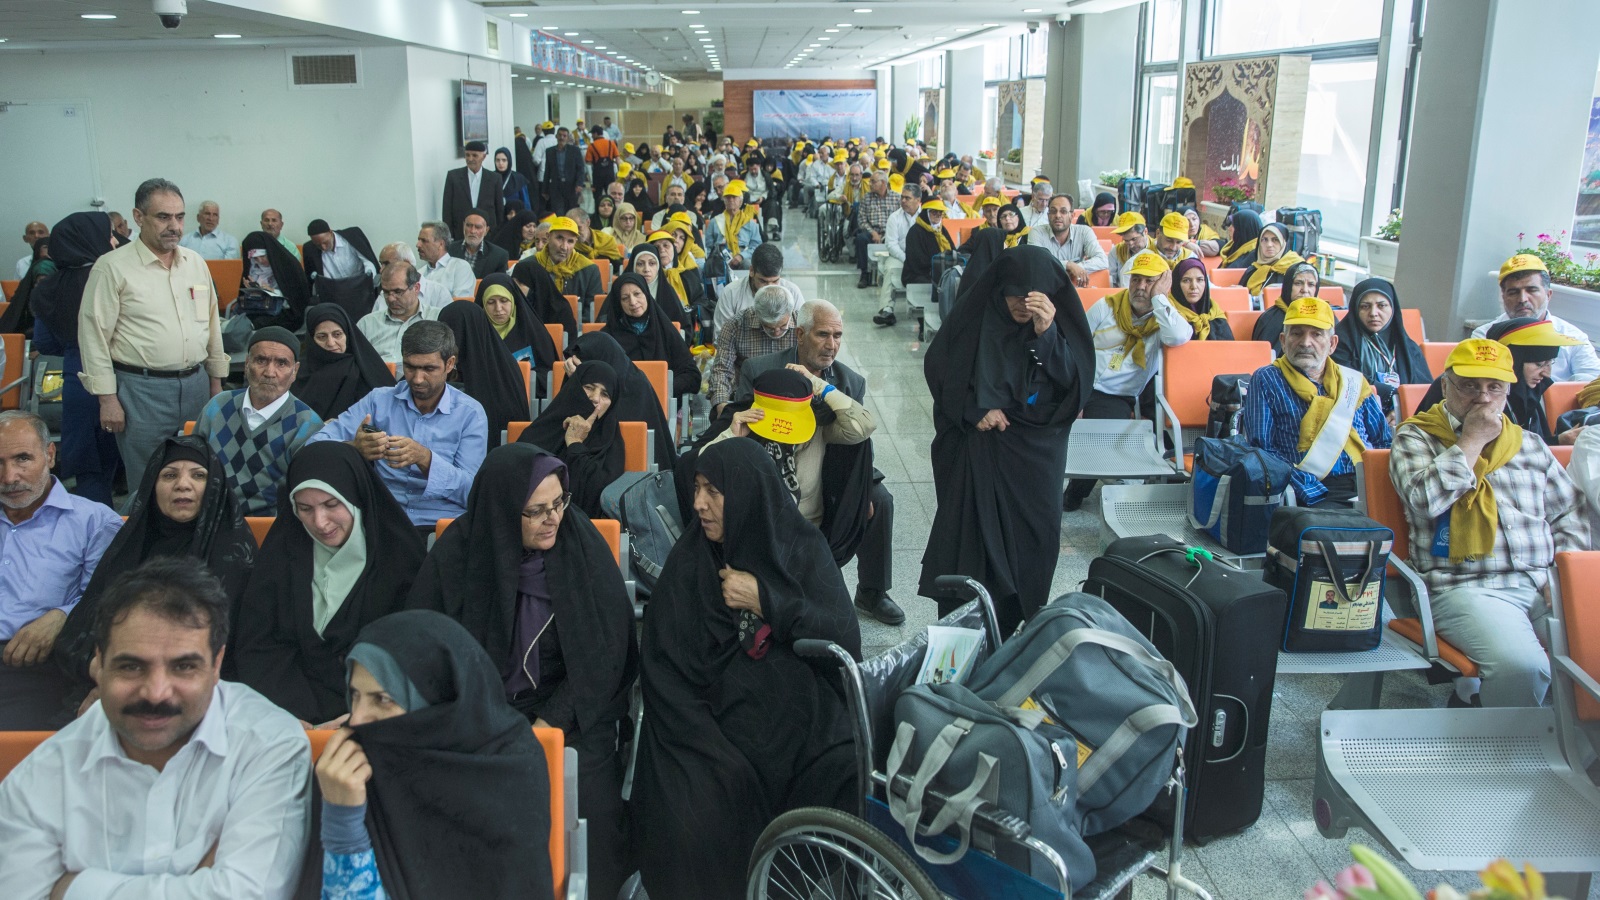 ‪إيران توصلت مؤخرا إلى تفاهمات مع السعودية حول نقل ورعاية حجاجها‬ إيران توصلت مؤخرا إلى تفاهمات مع السعودية حول نقل ورعاية حجاجها (رويترز)